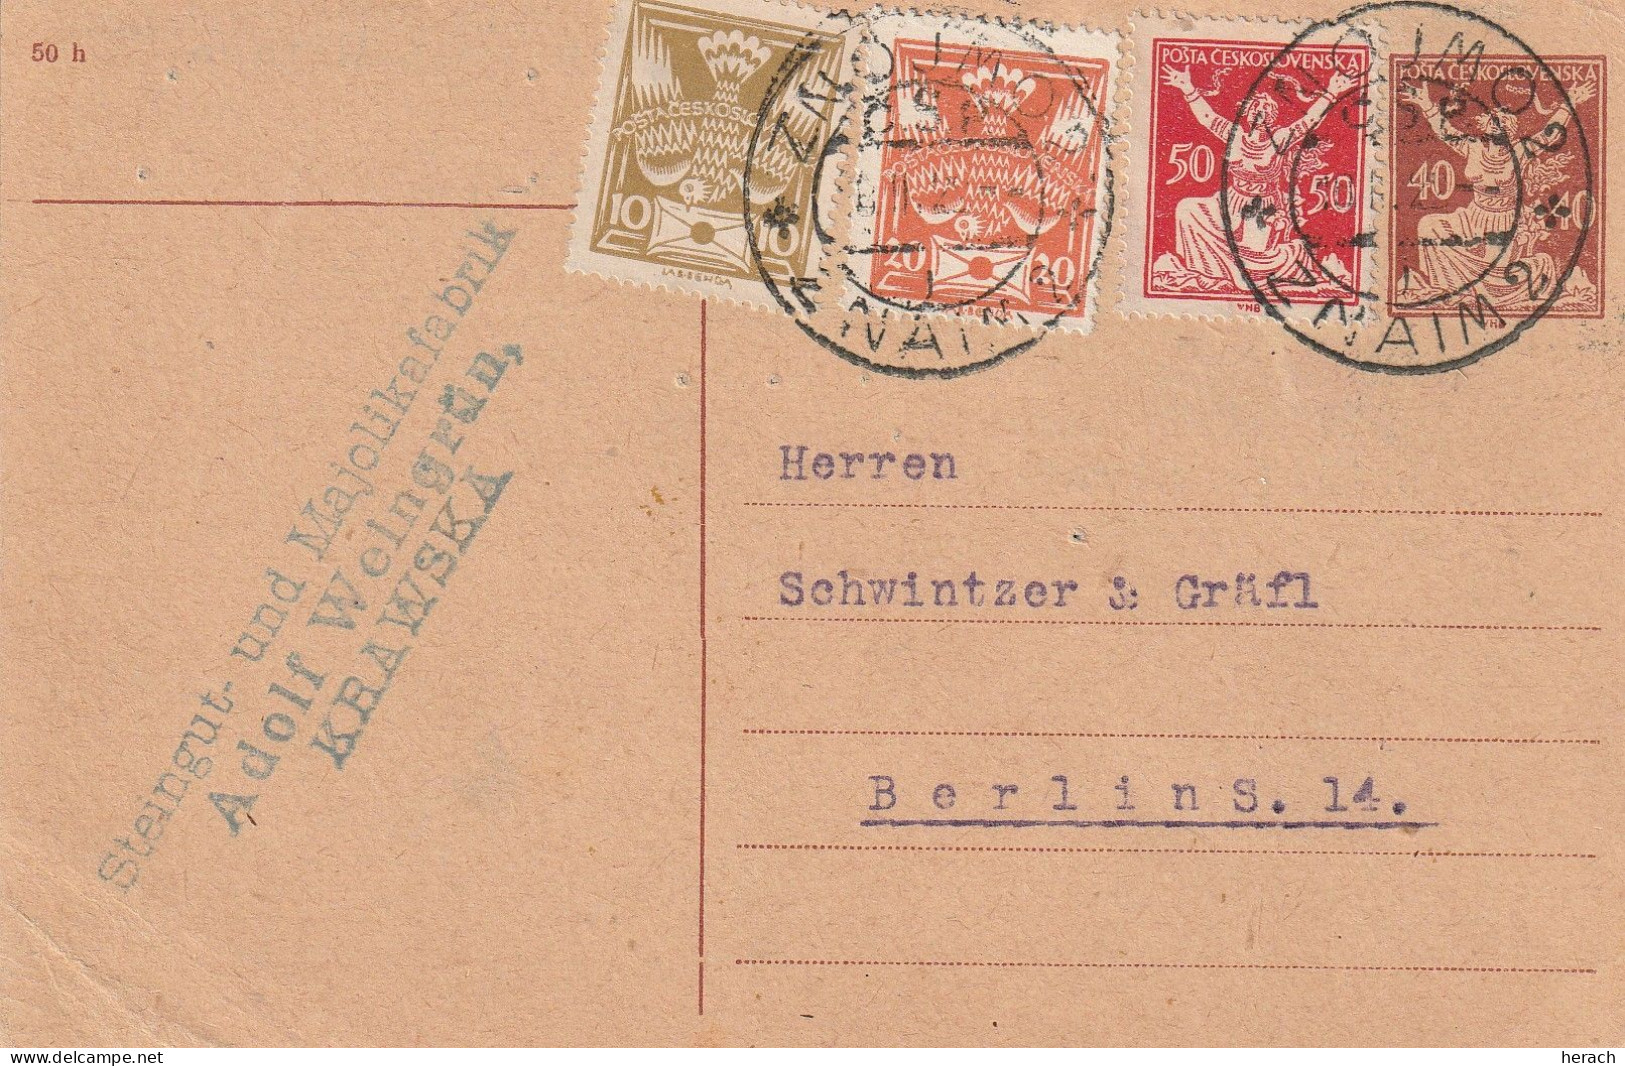 Tchécoslovaquie Entier Postal Pour L'Allemagne 1922 - Cartoline Postali